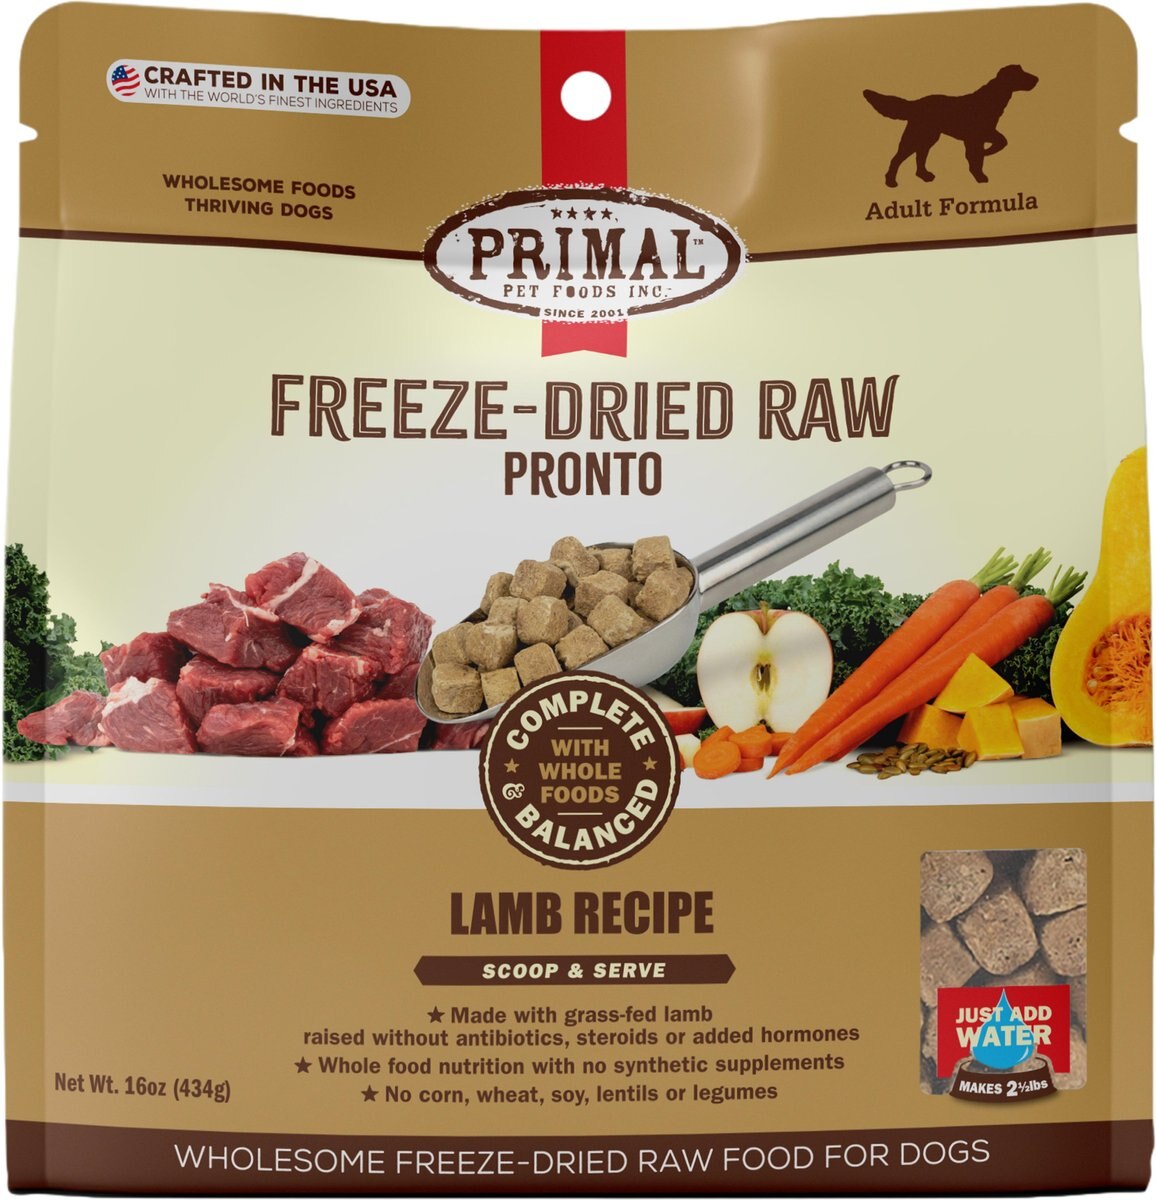 buy/order frozen certified lamb tail fat